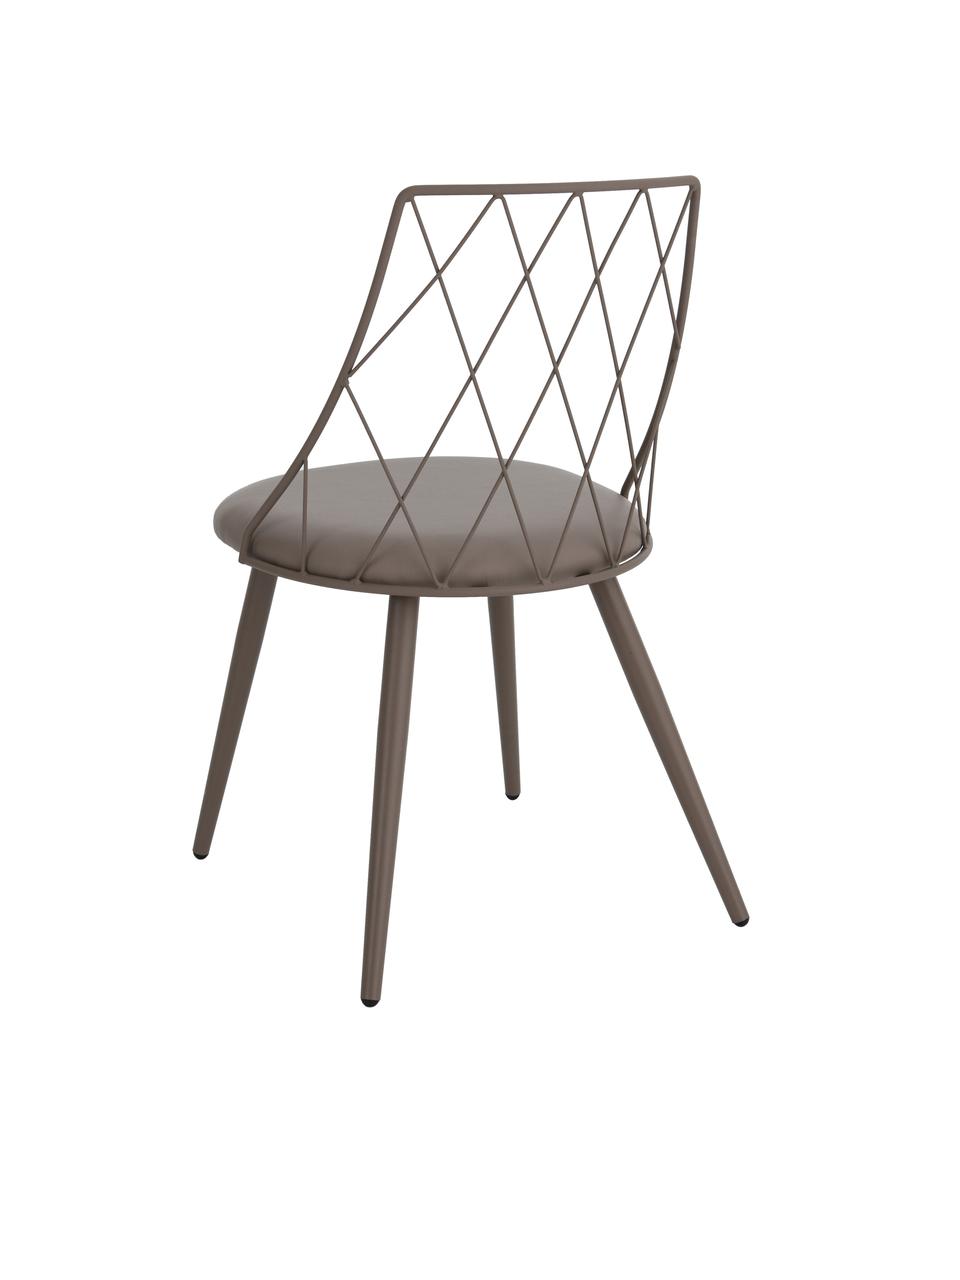 Kunstleren stoelen Addie in taupe, 2 stuks, Frame: metaal, gecoat, Kunstleer taupe, B 49 cm x D 49 cm